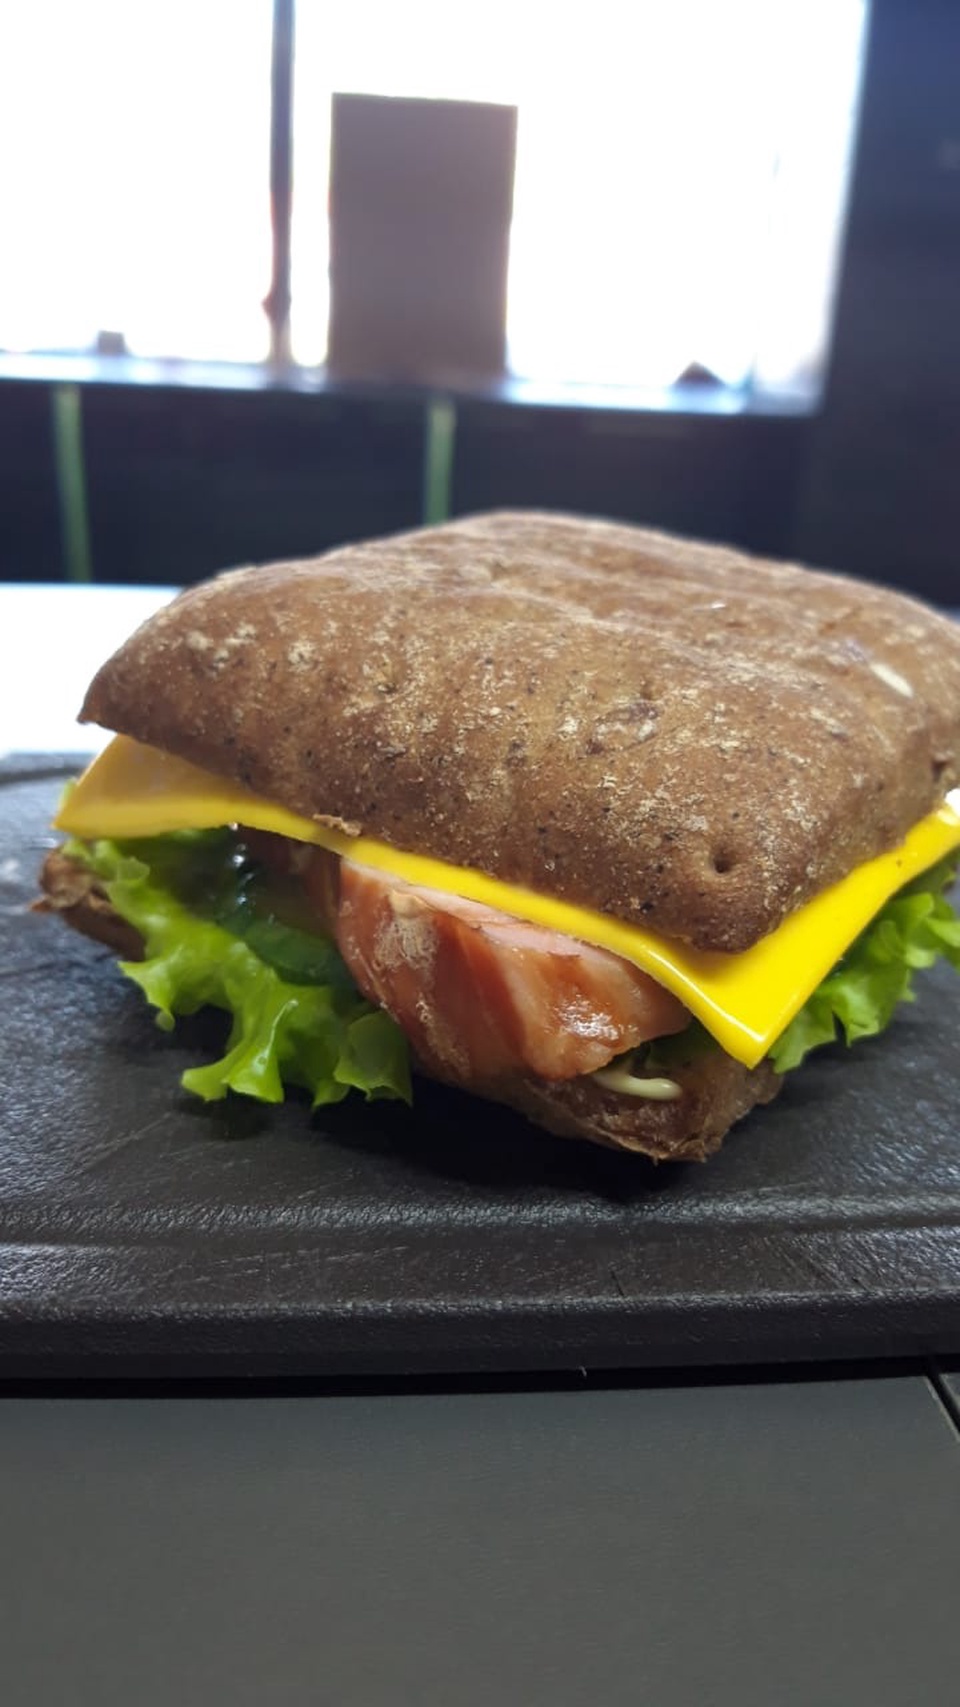 Сэндвич - 100 ₽, заказать онлайн.